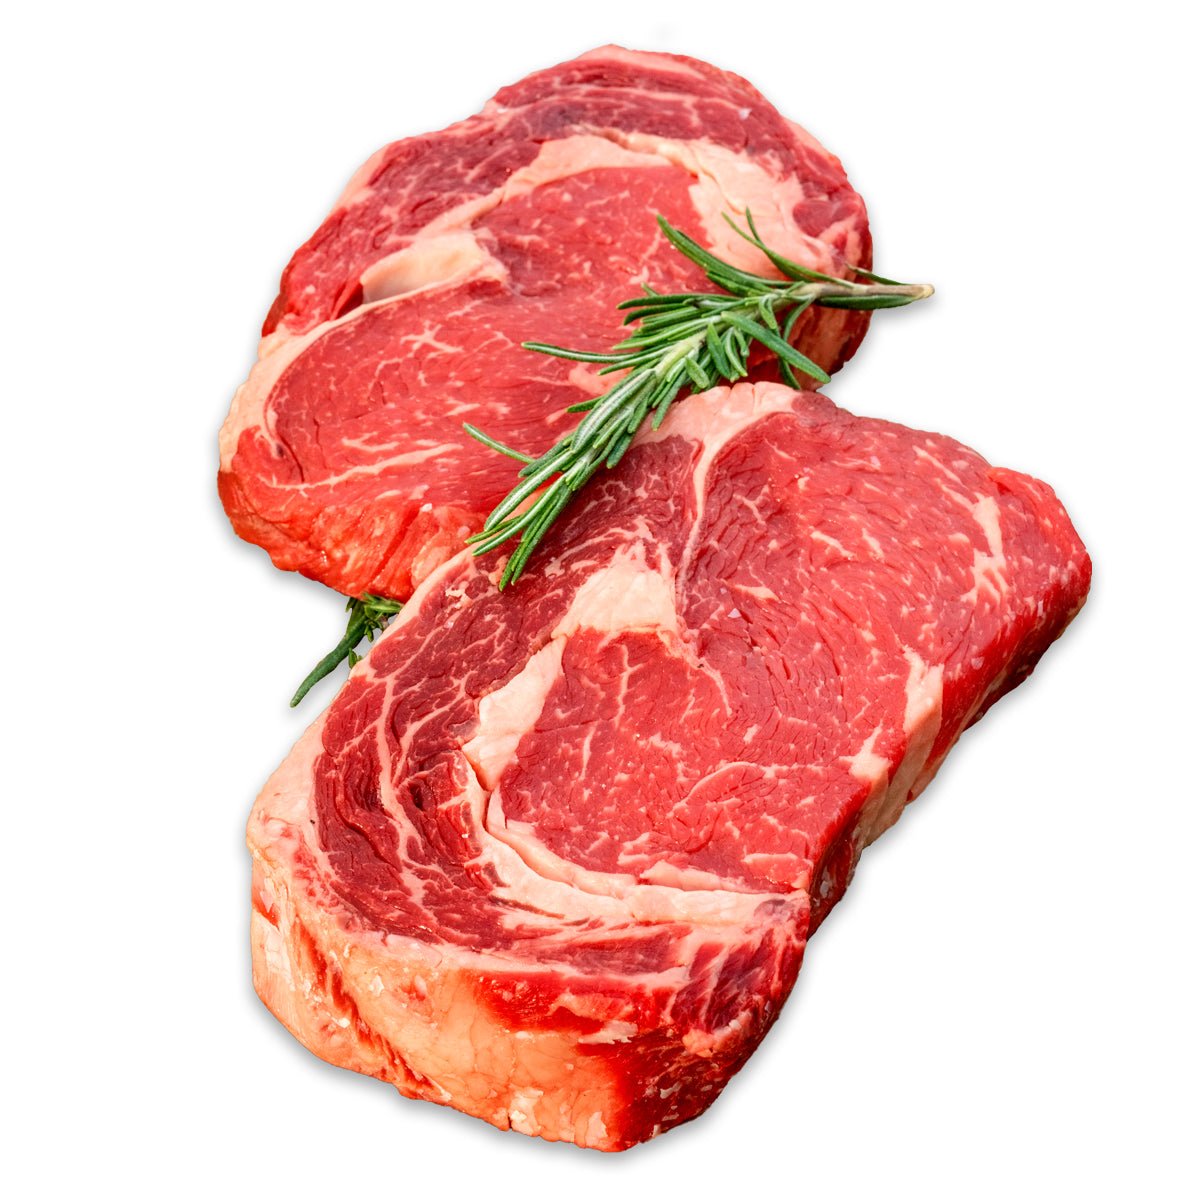 Rinder,Rib Eye Steak a. 350g ARG/Argentinien - küblerGo